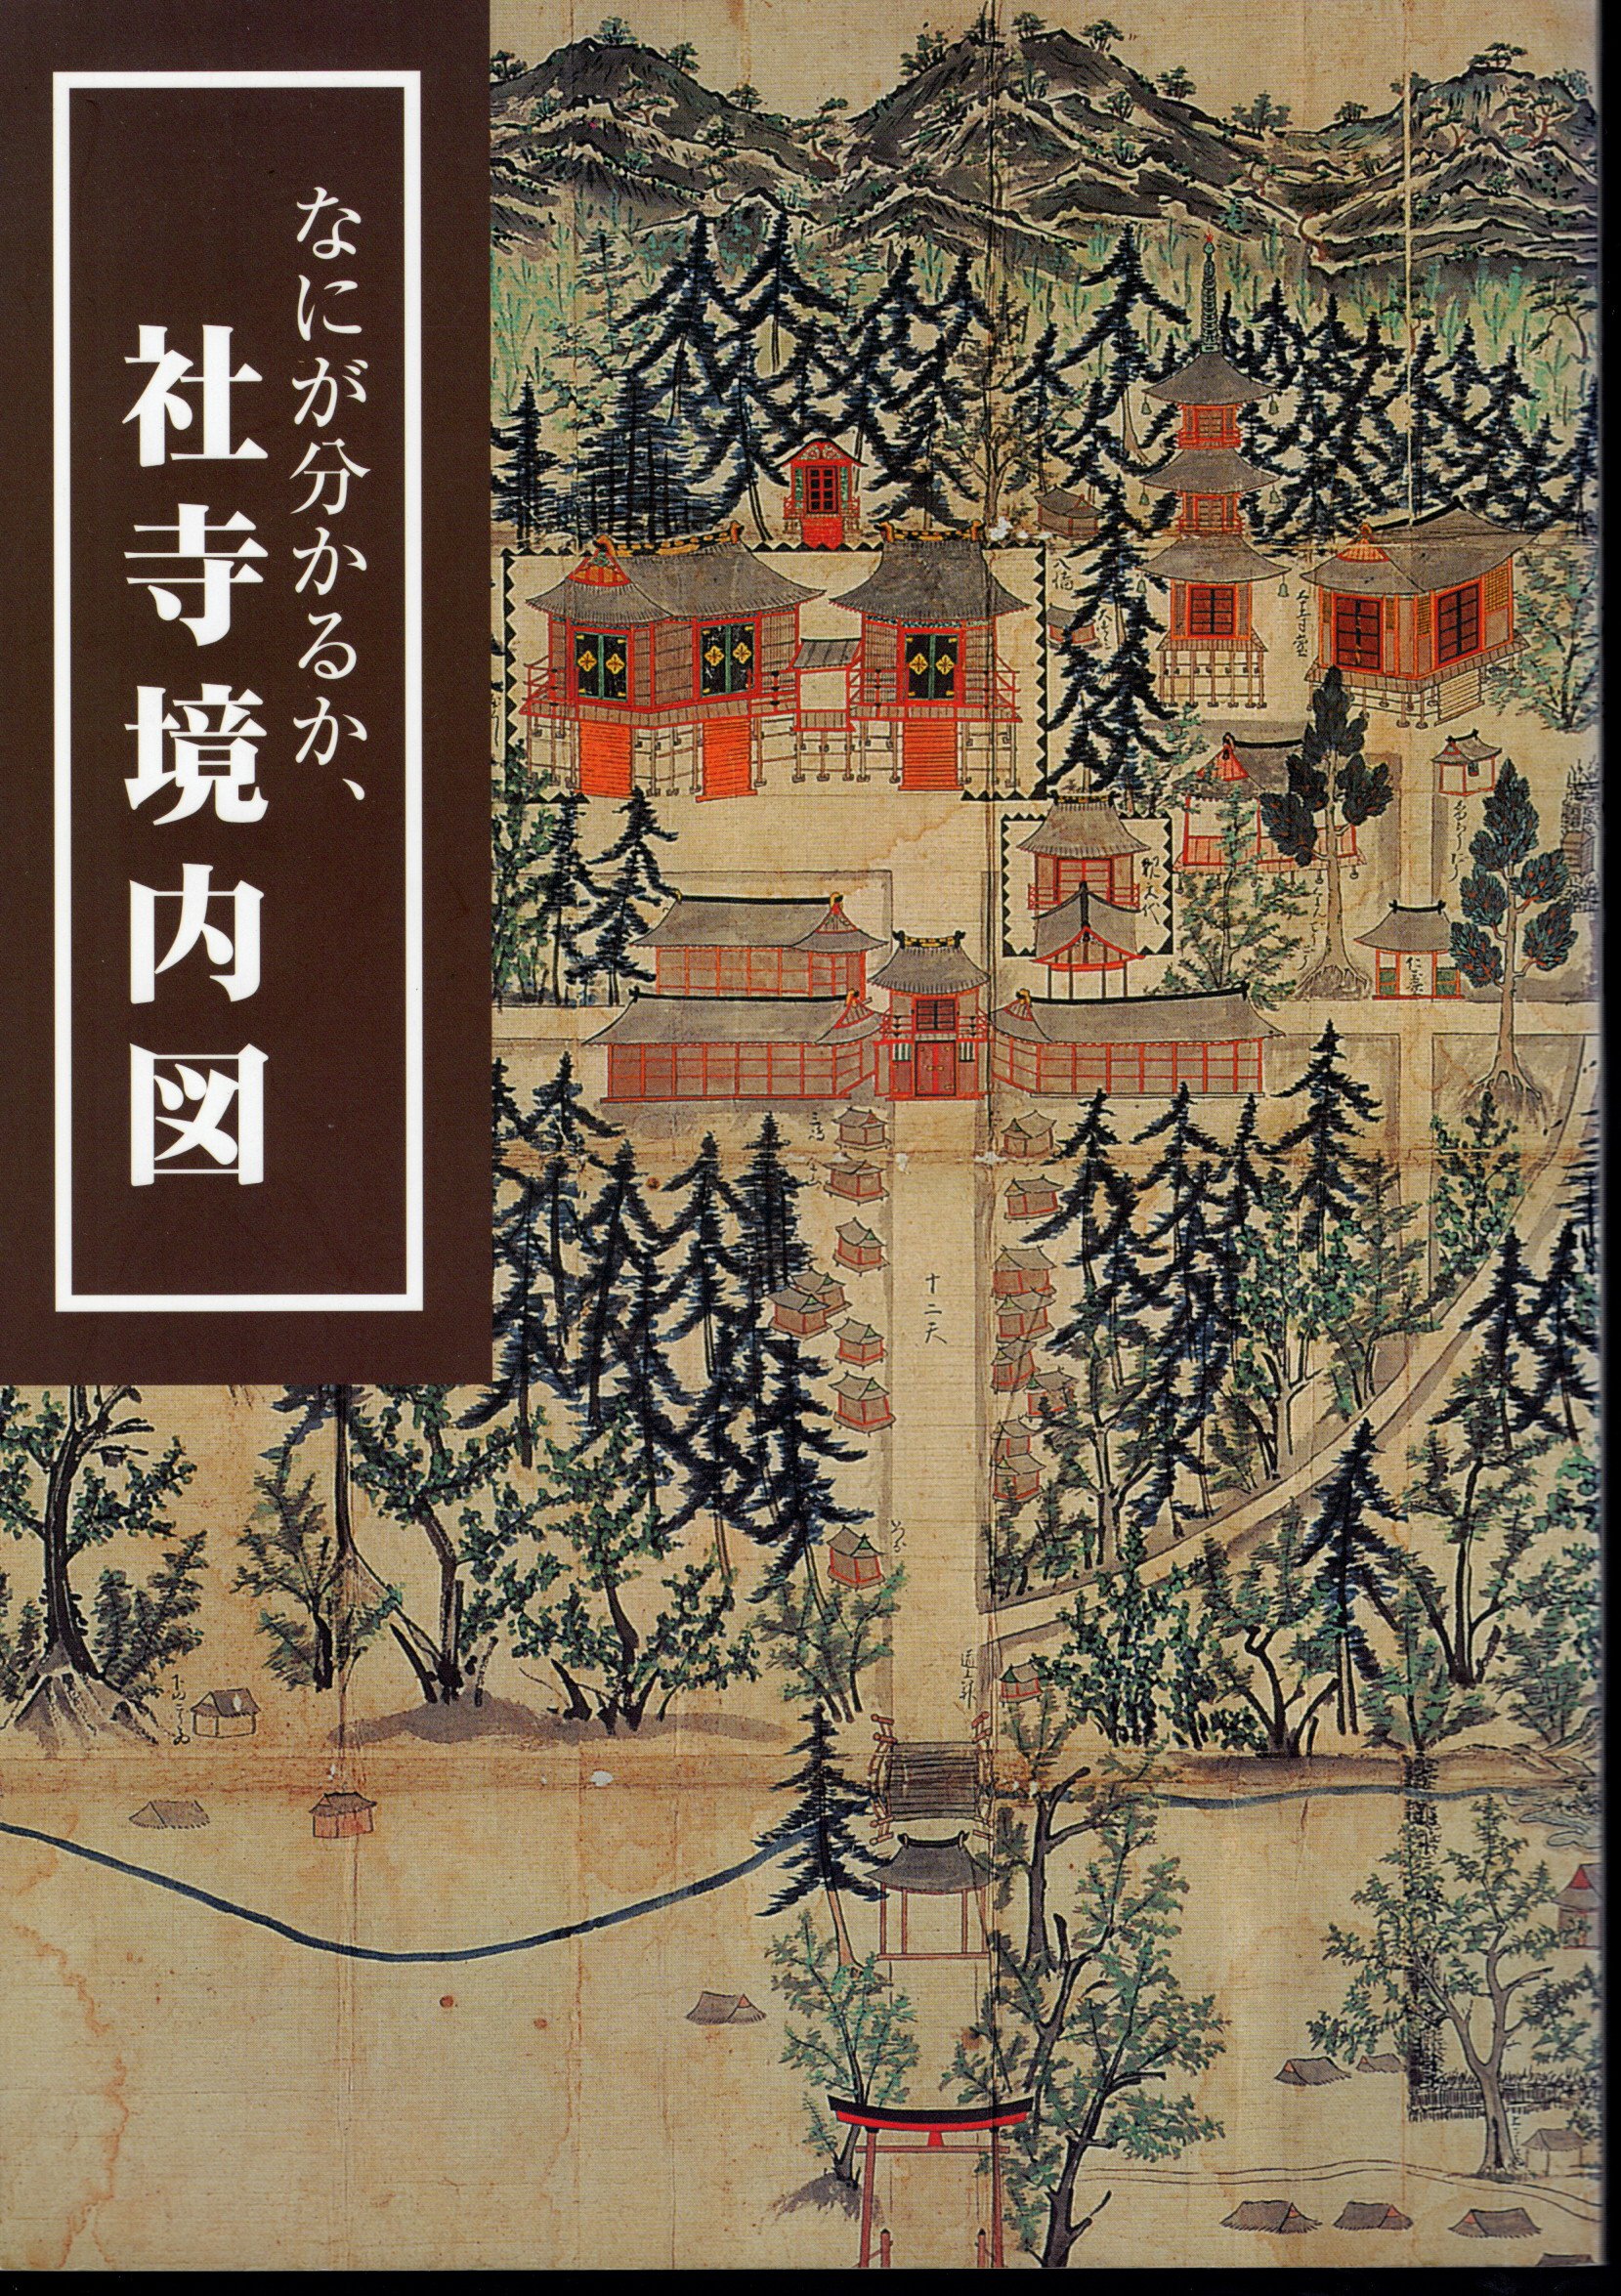 企画展示 なにが分かるか、社寺境内図(国立歴史民俗博物館) / 古本